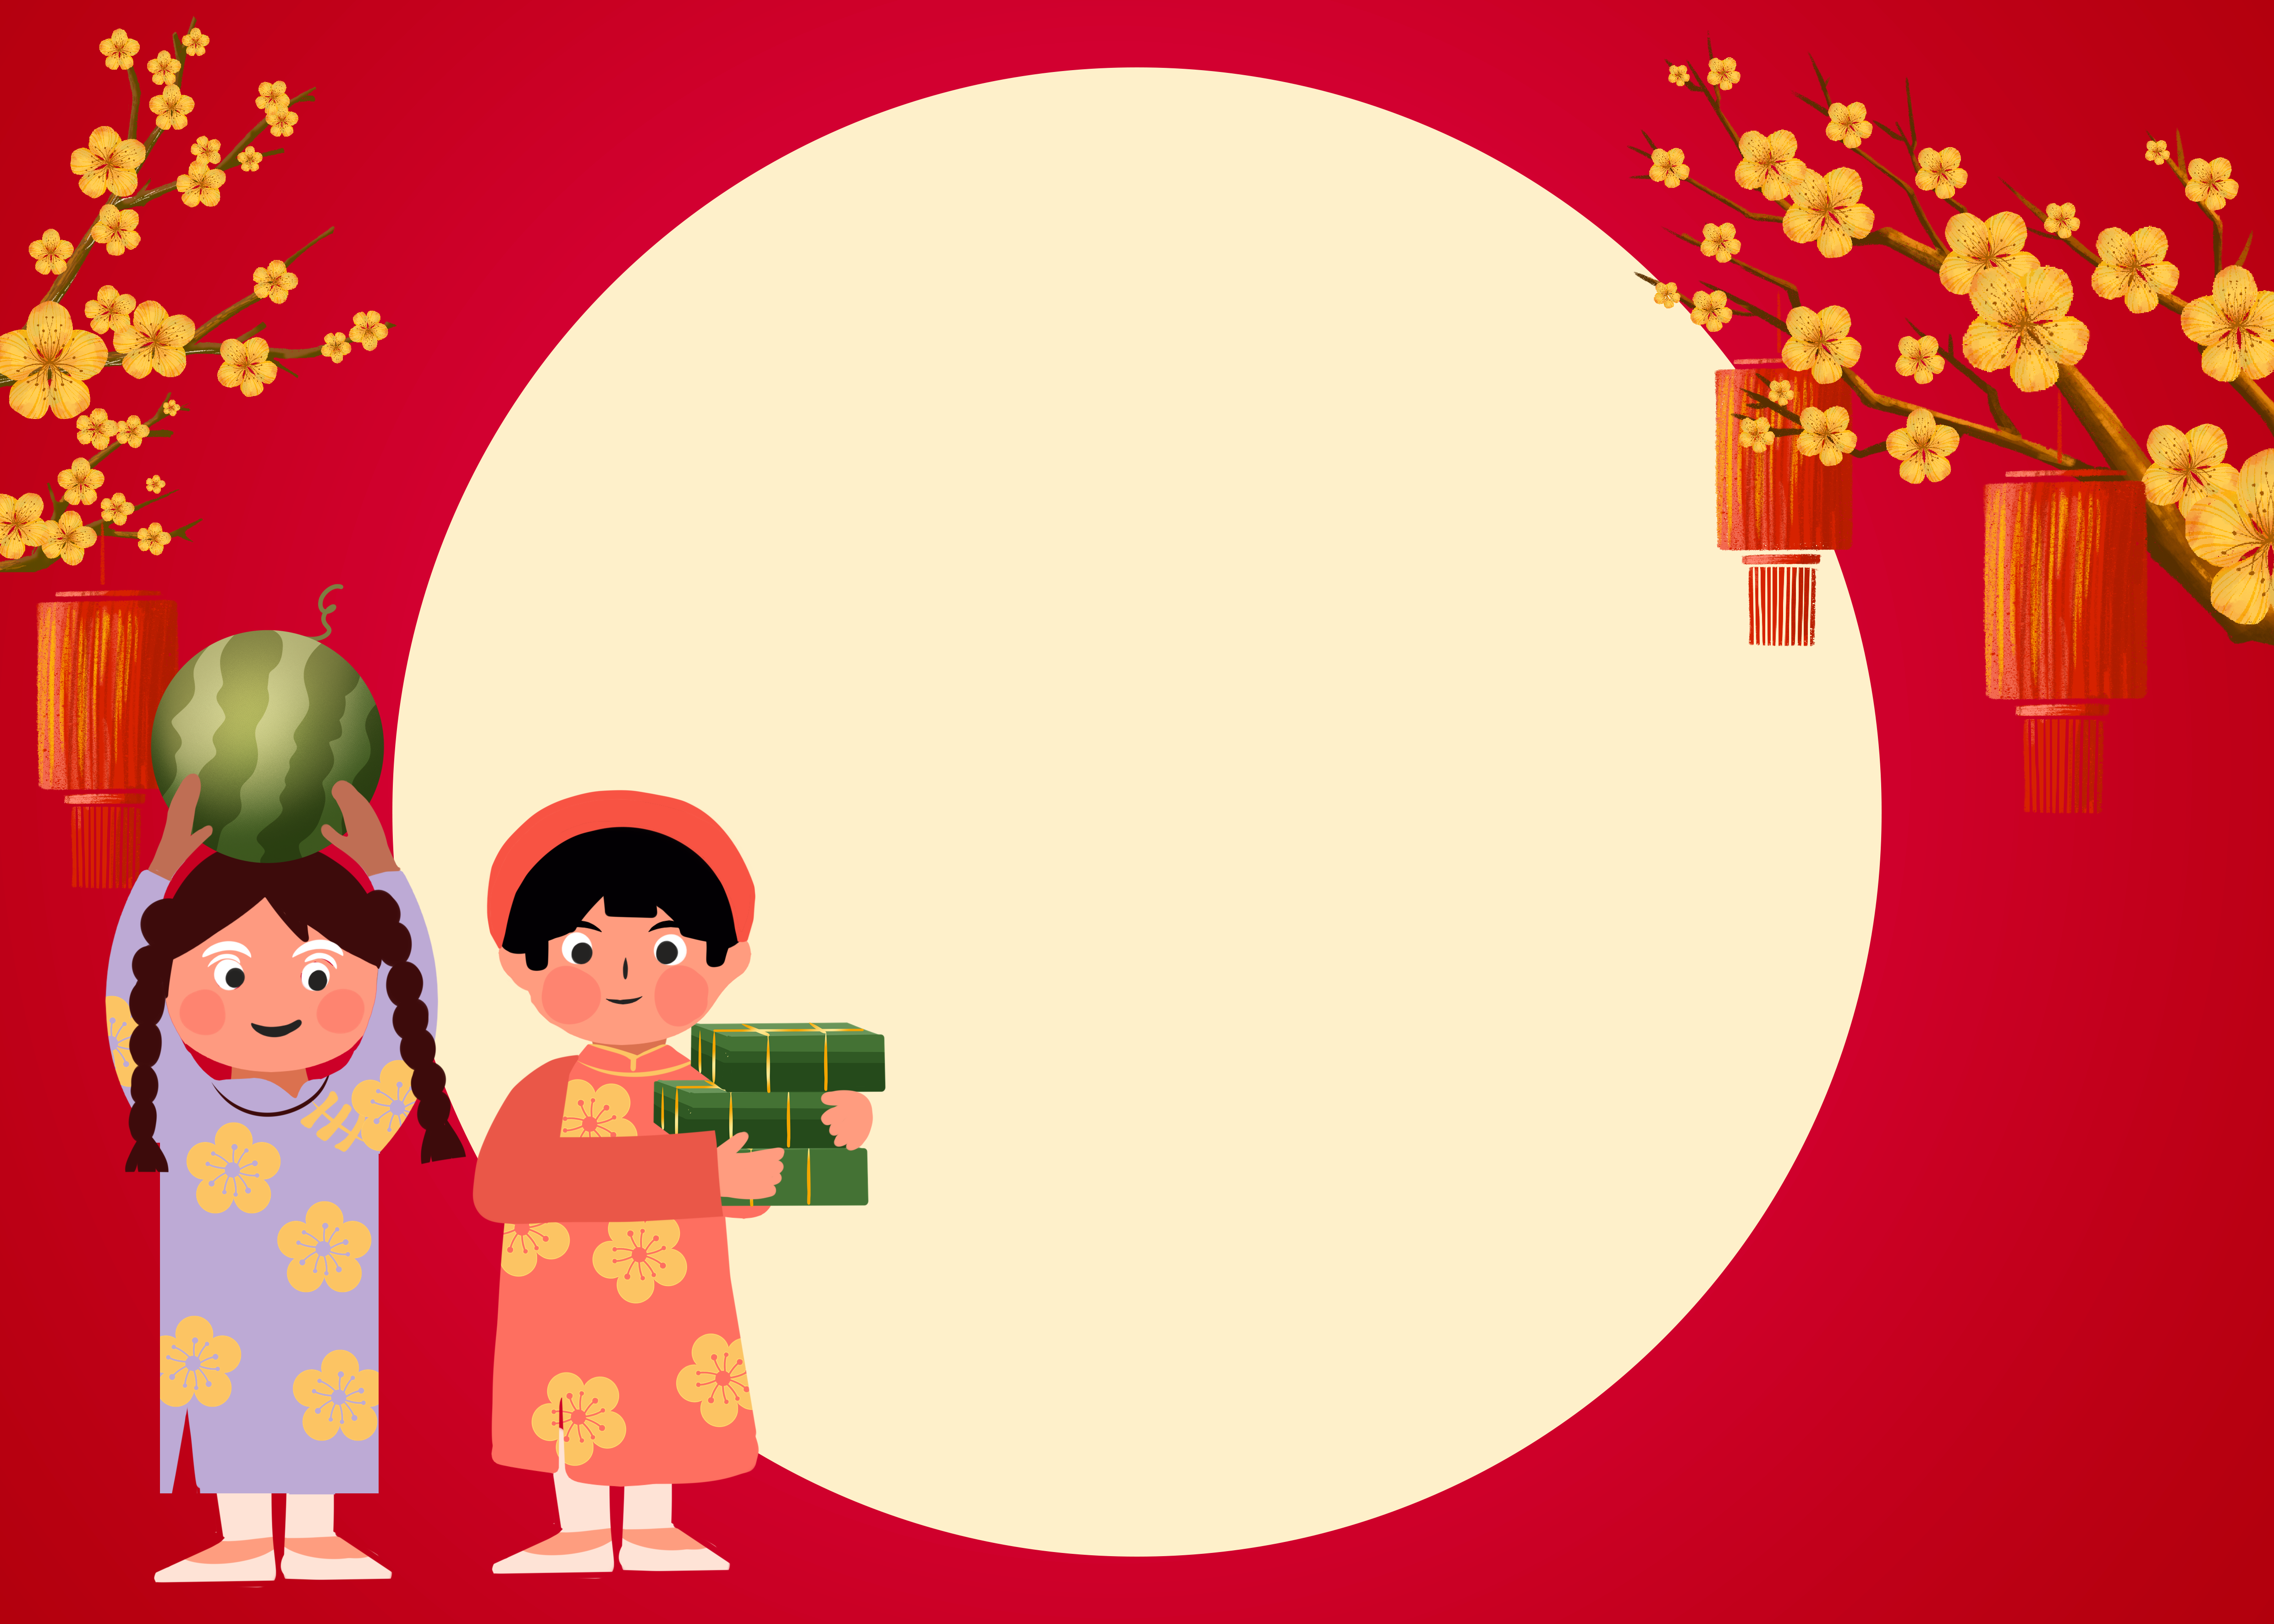 红底圆形图案越南春节背景图片